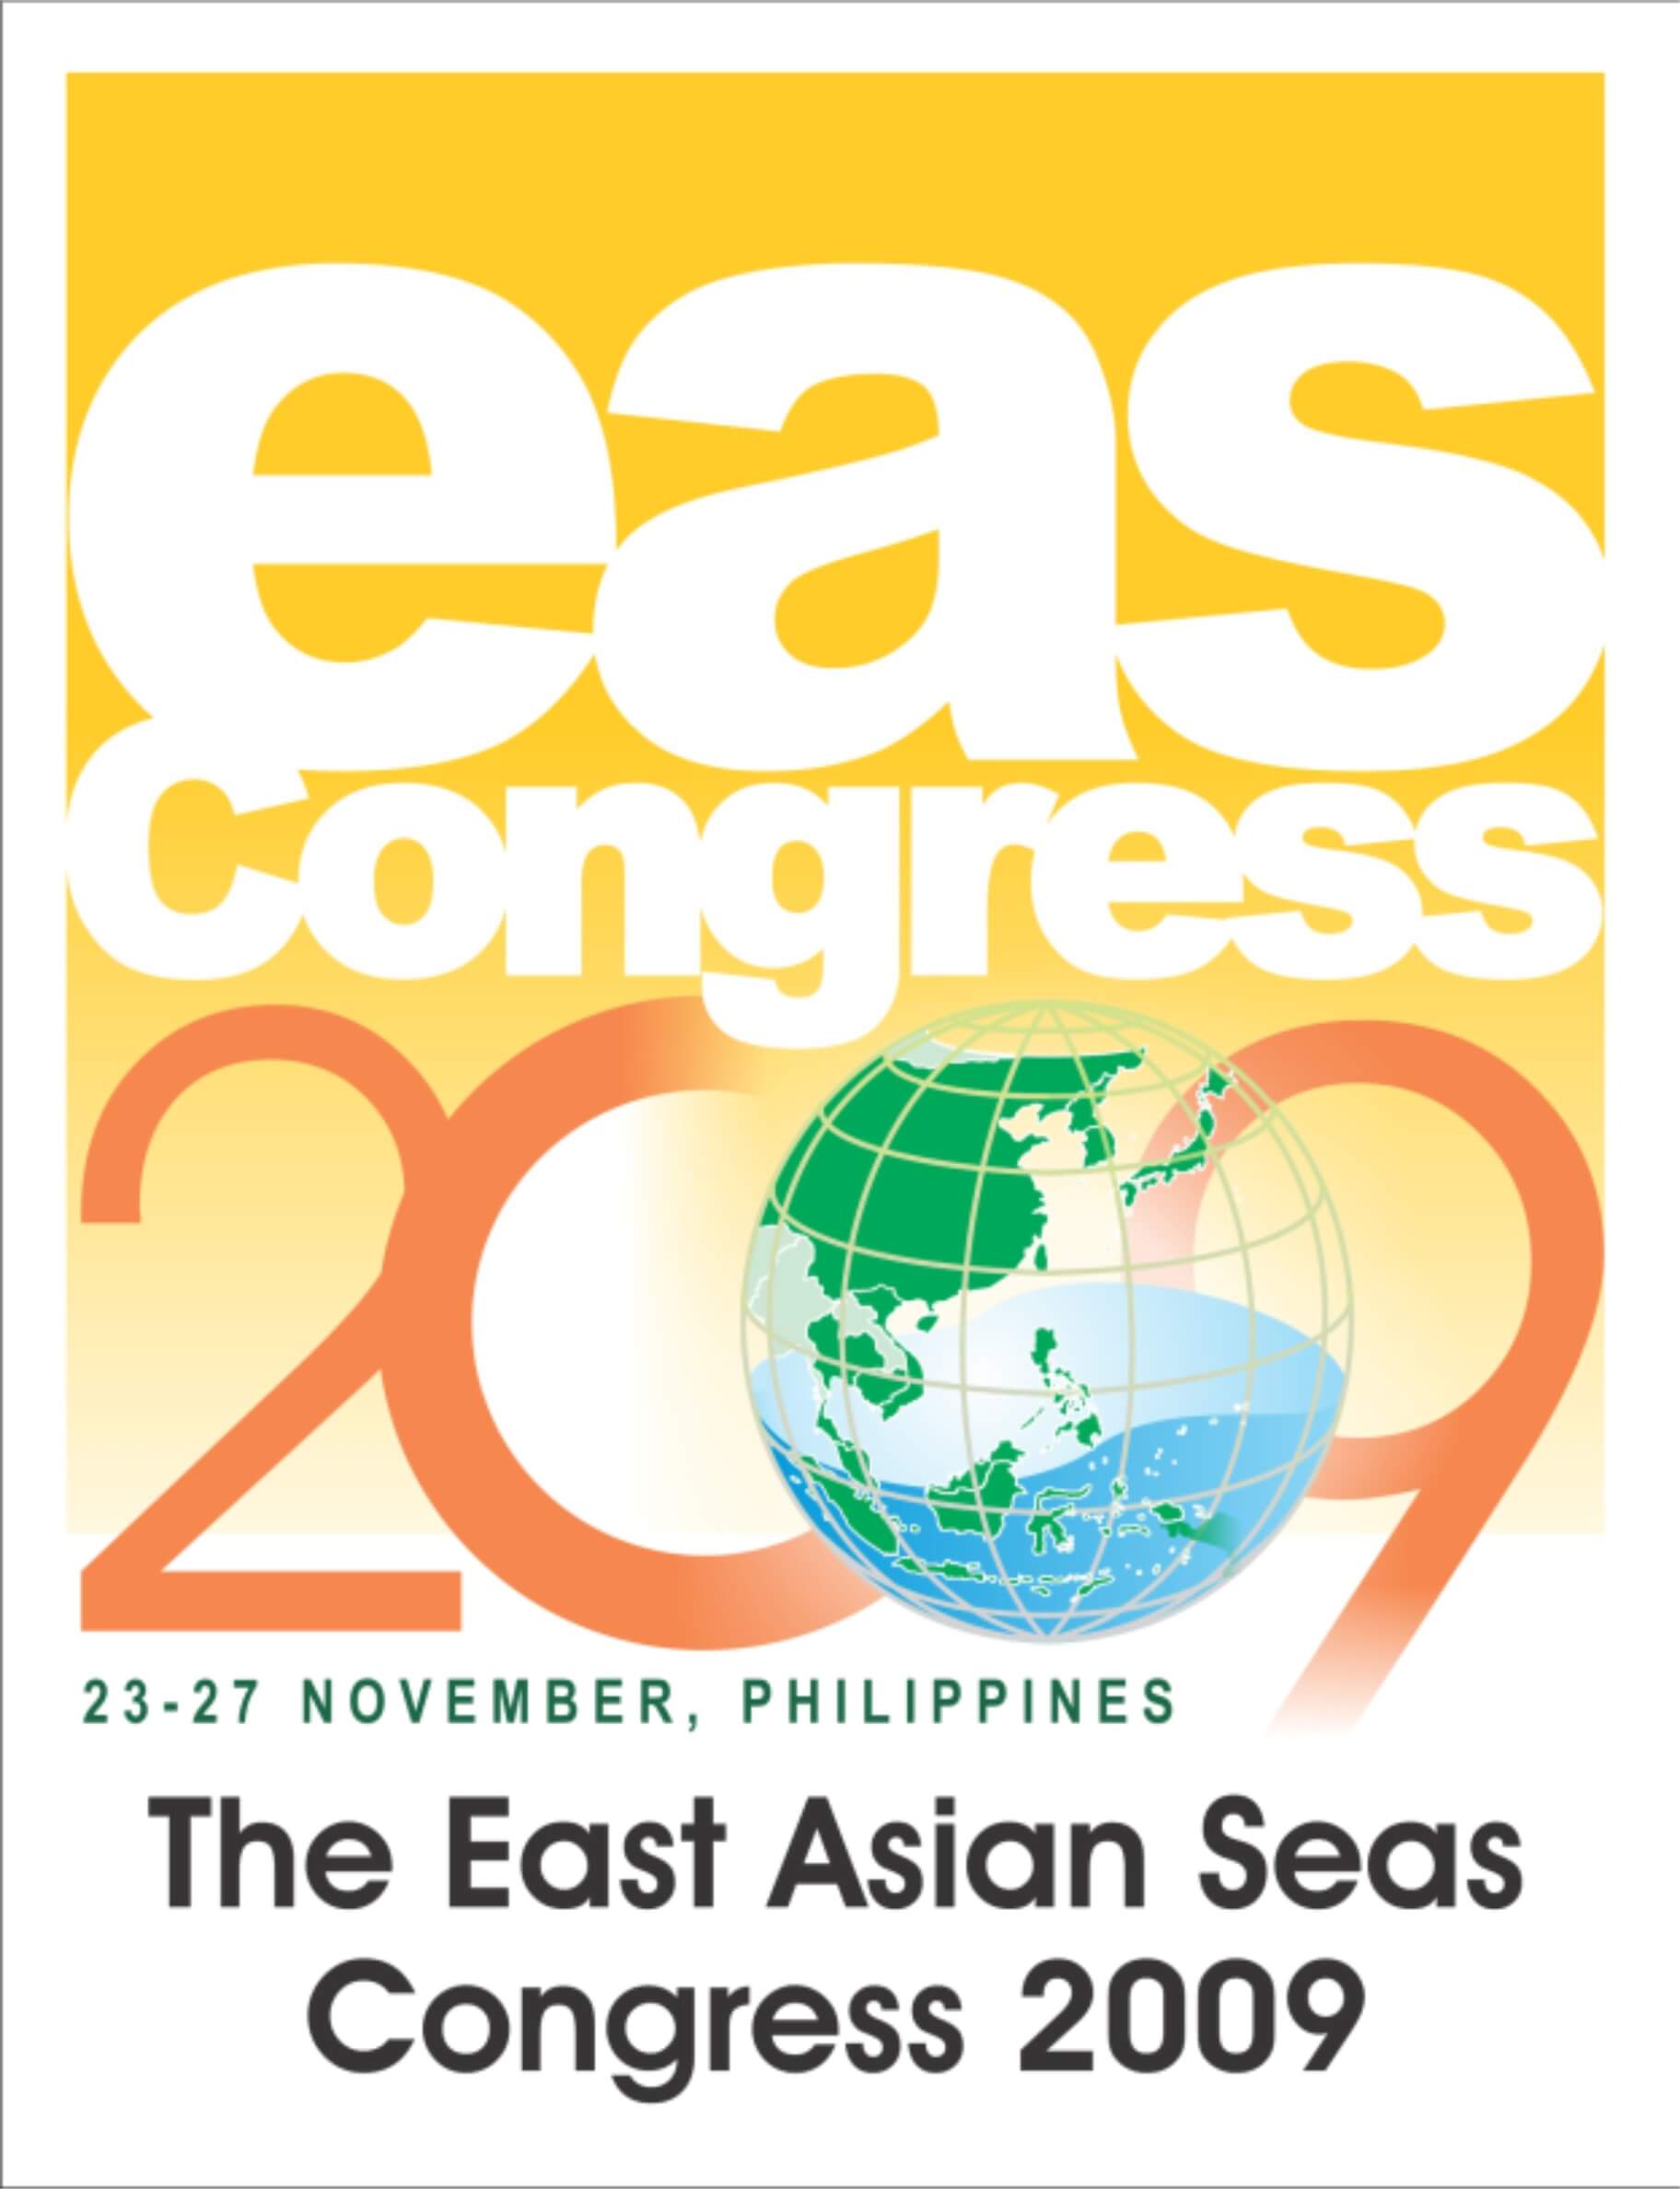 EAS Congress 2009 logo